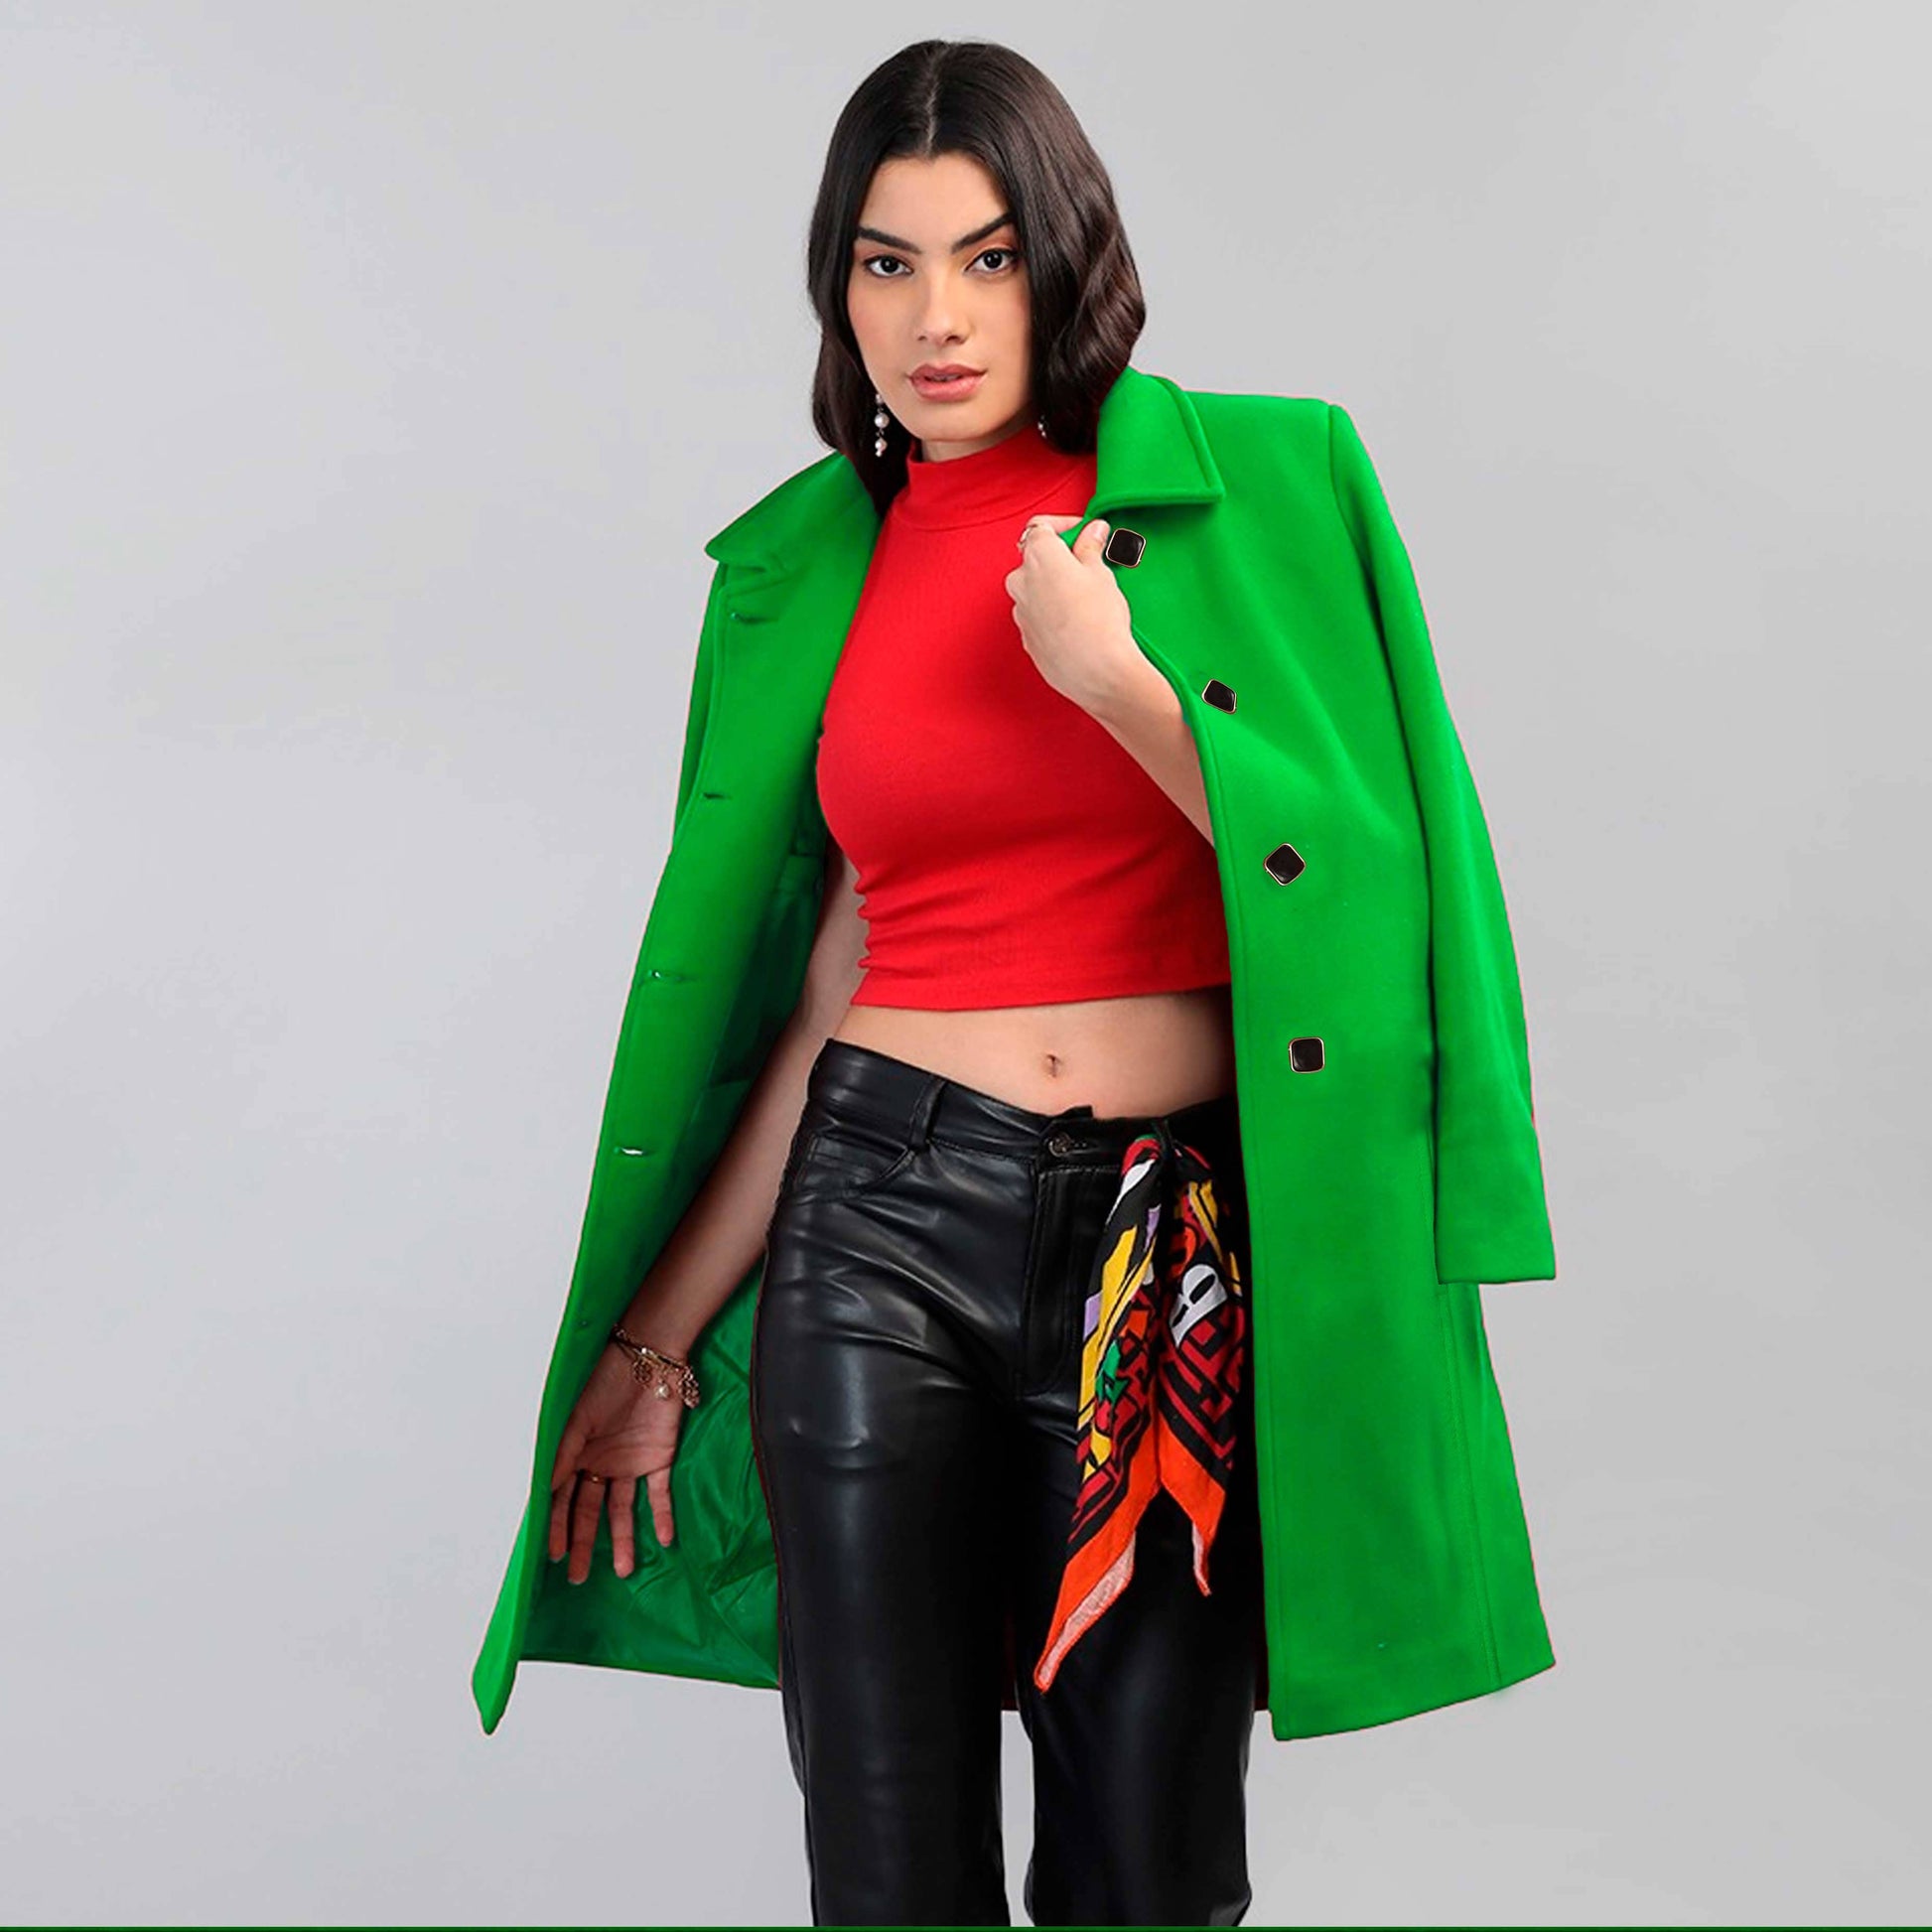 Classic Fashion Women's Winter Moroto Outwear Long Coat Women's Jacket First Choice Green M 